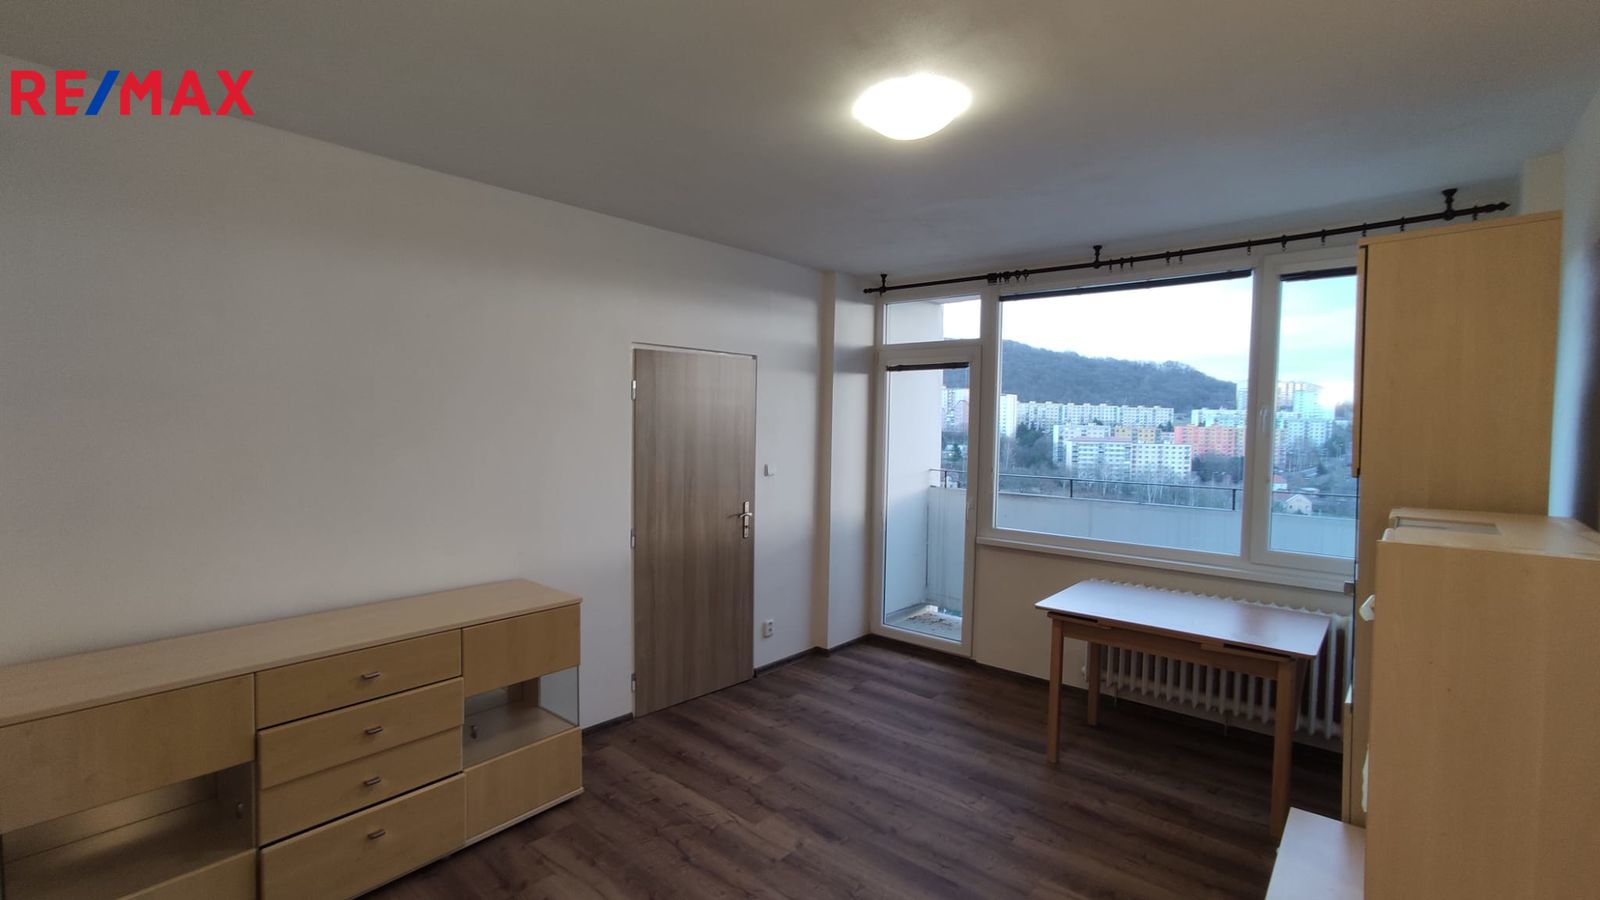 Pronájem bytu 3+1 v osobním vlastnictví, 63 m2, Ústí nad Labem